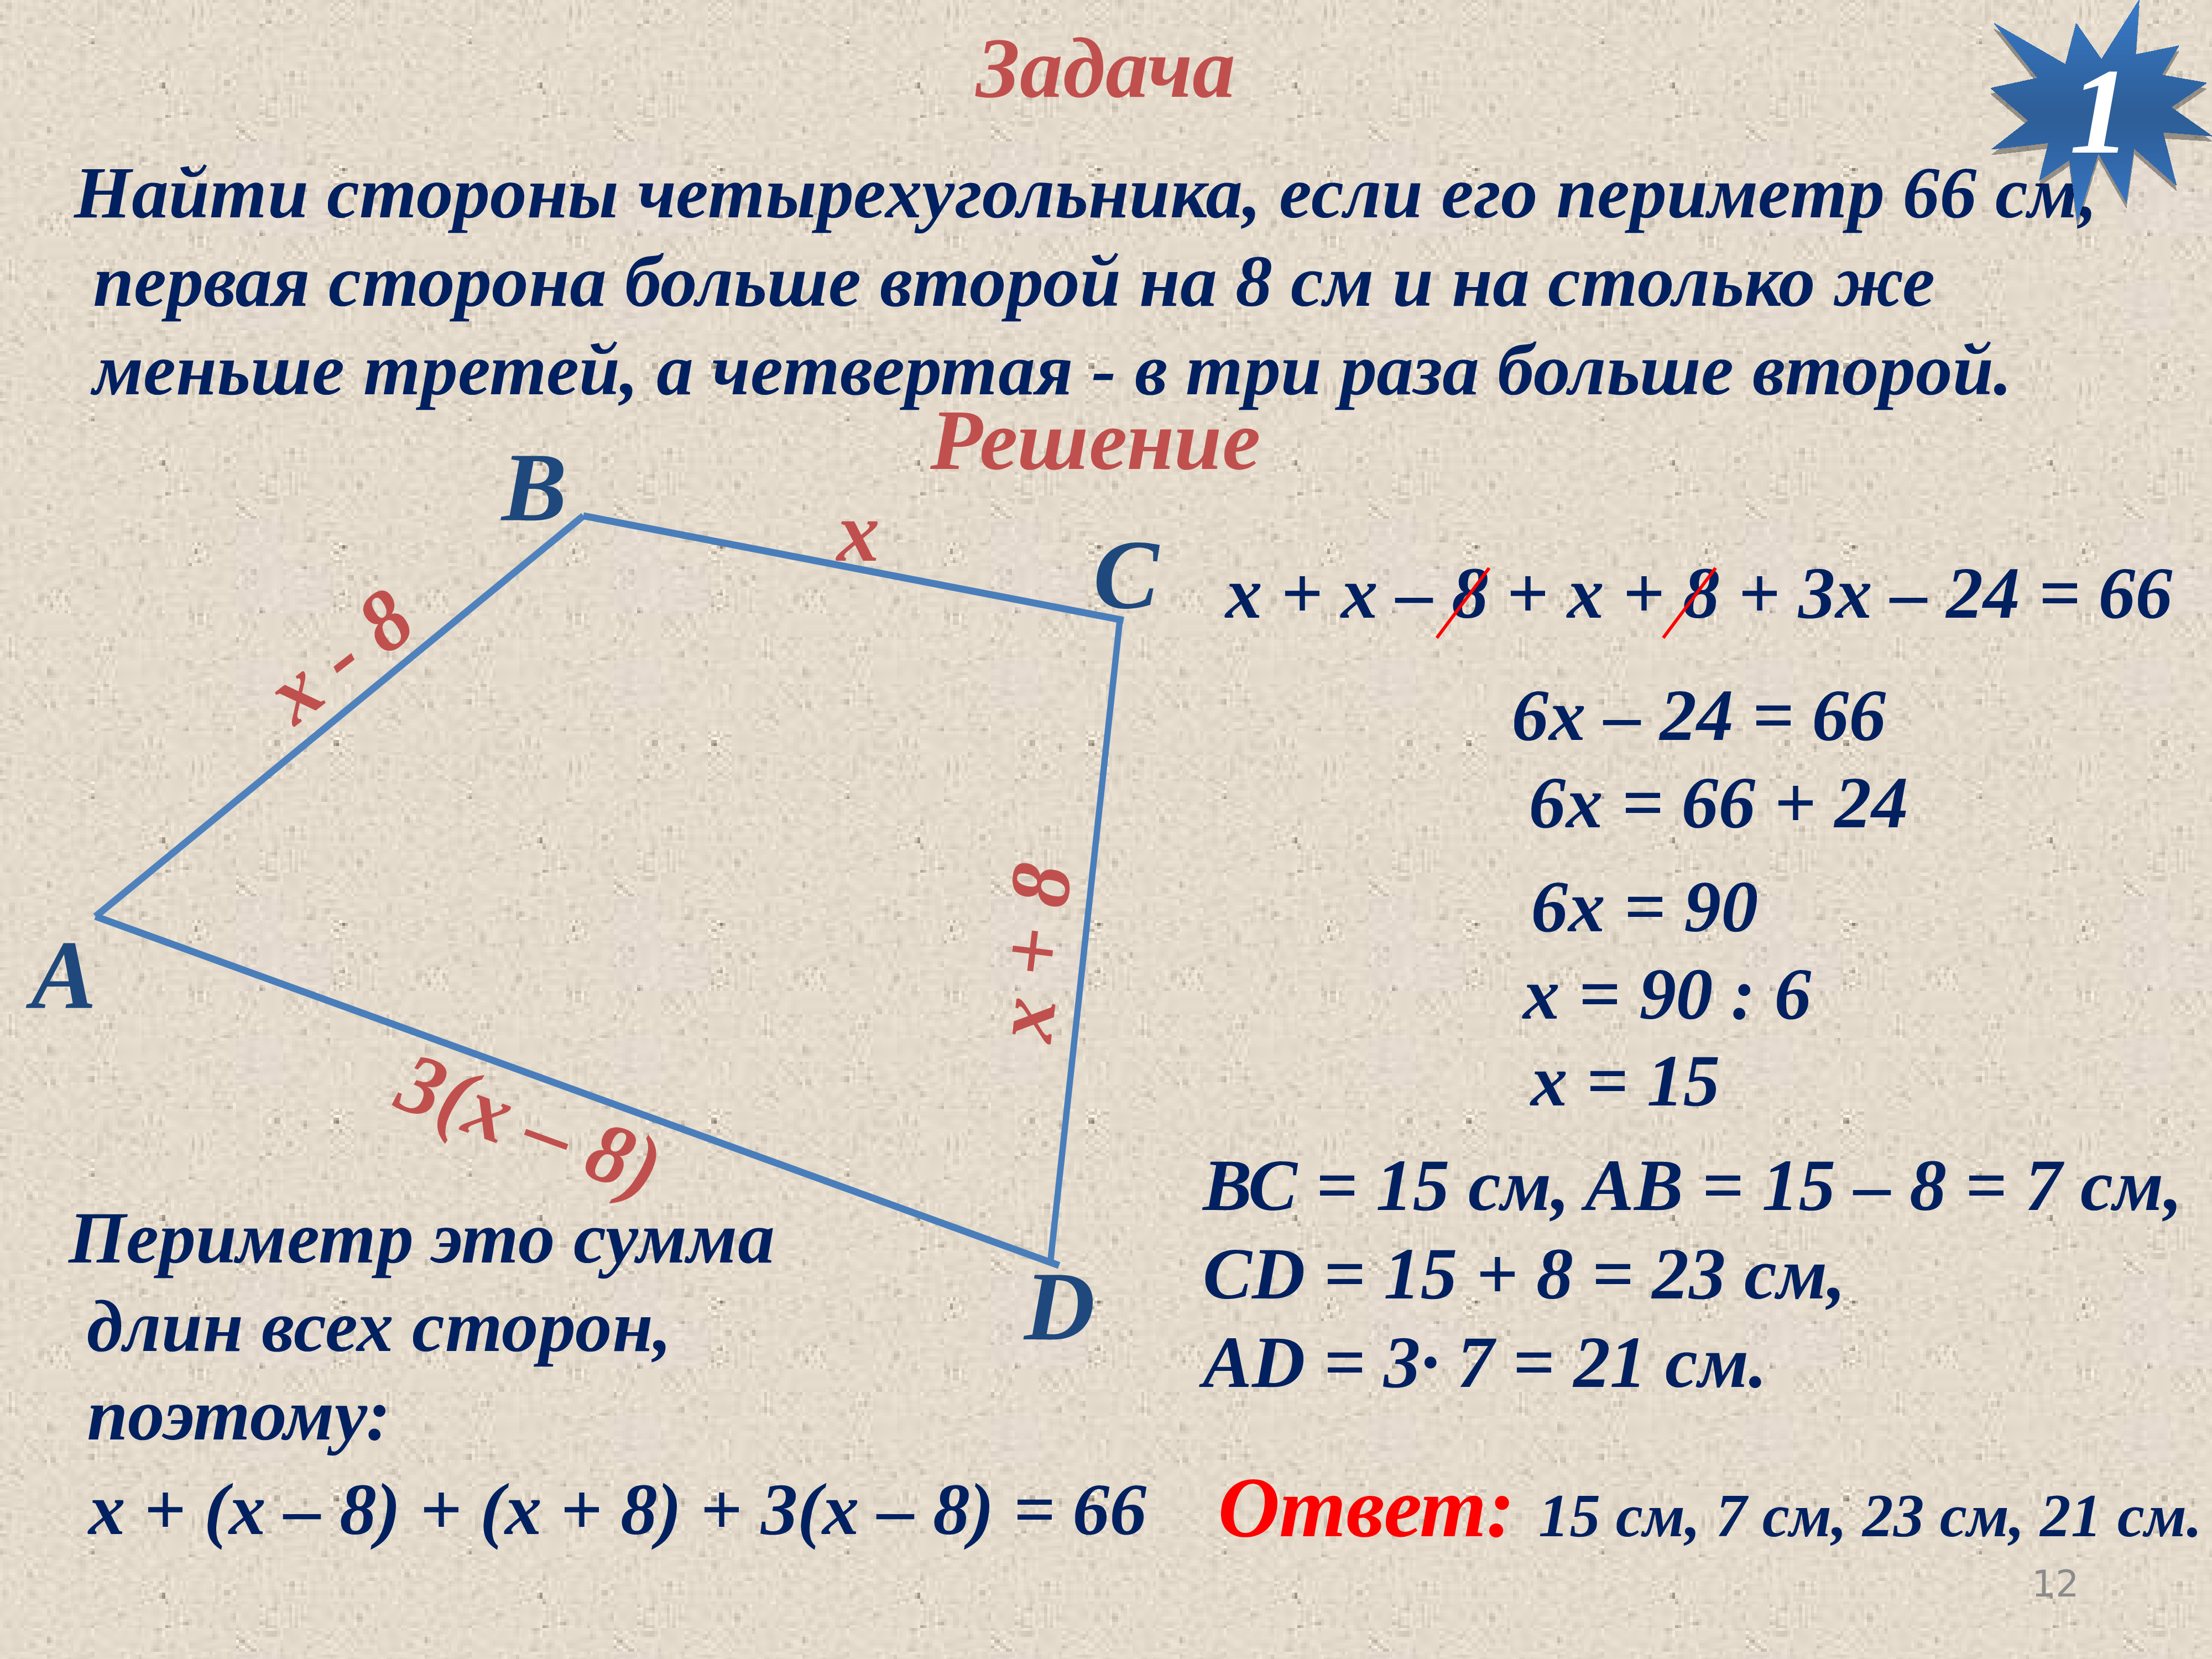 Длины сторон четырехугольника равны 4 сантиметра. Как найти сторону четырехугольника. Как найти строну четырёхугольника. Задачи на тему Четырехугольники. Задачи на нахождение сторон четырехугольника.